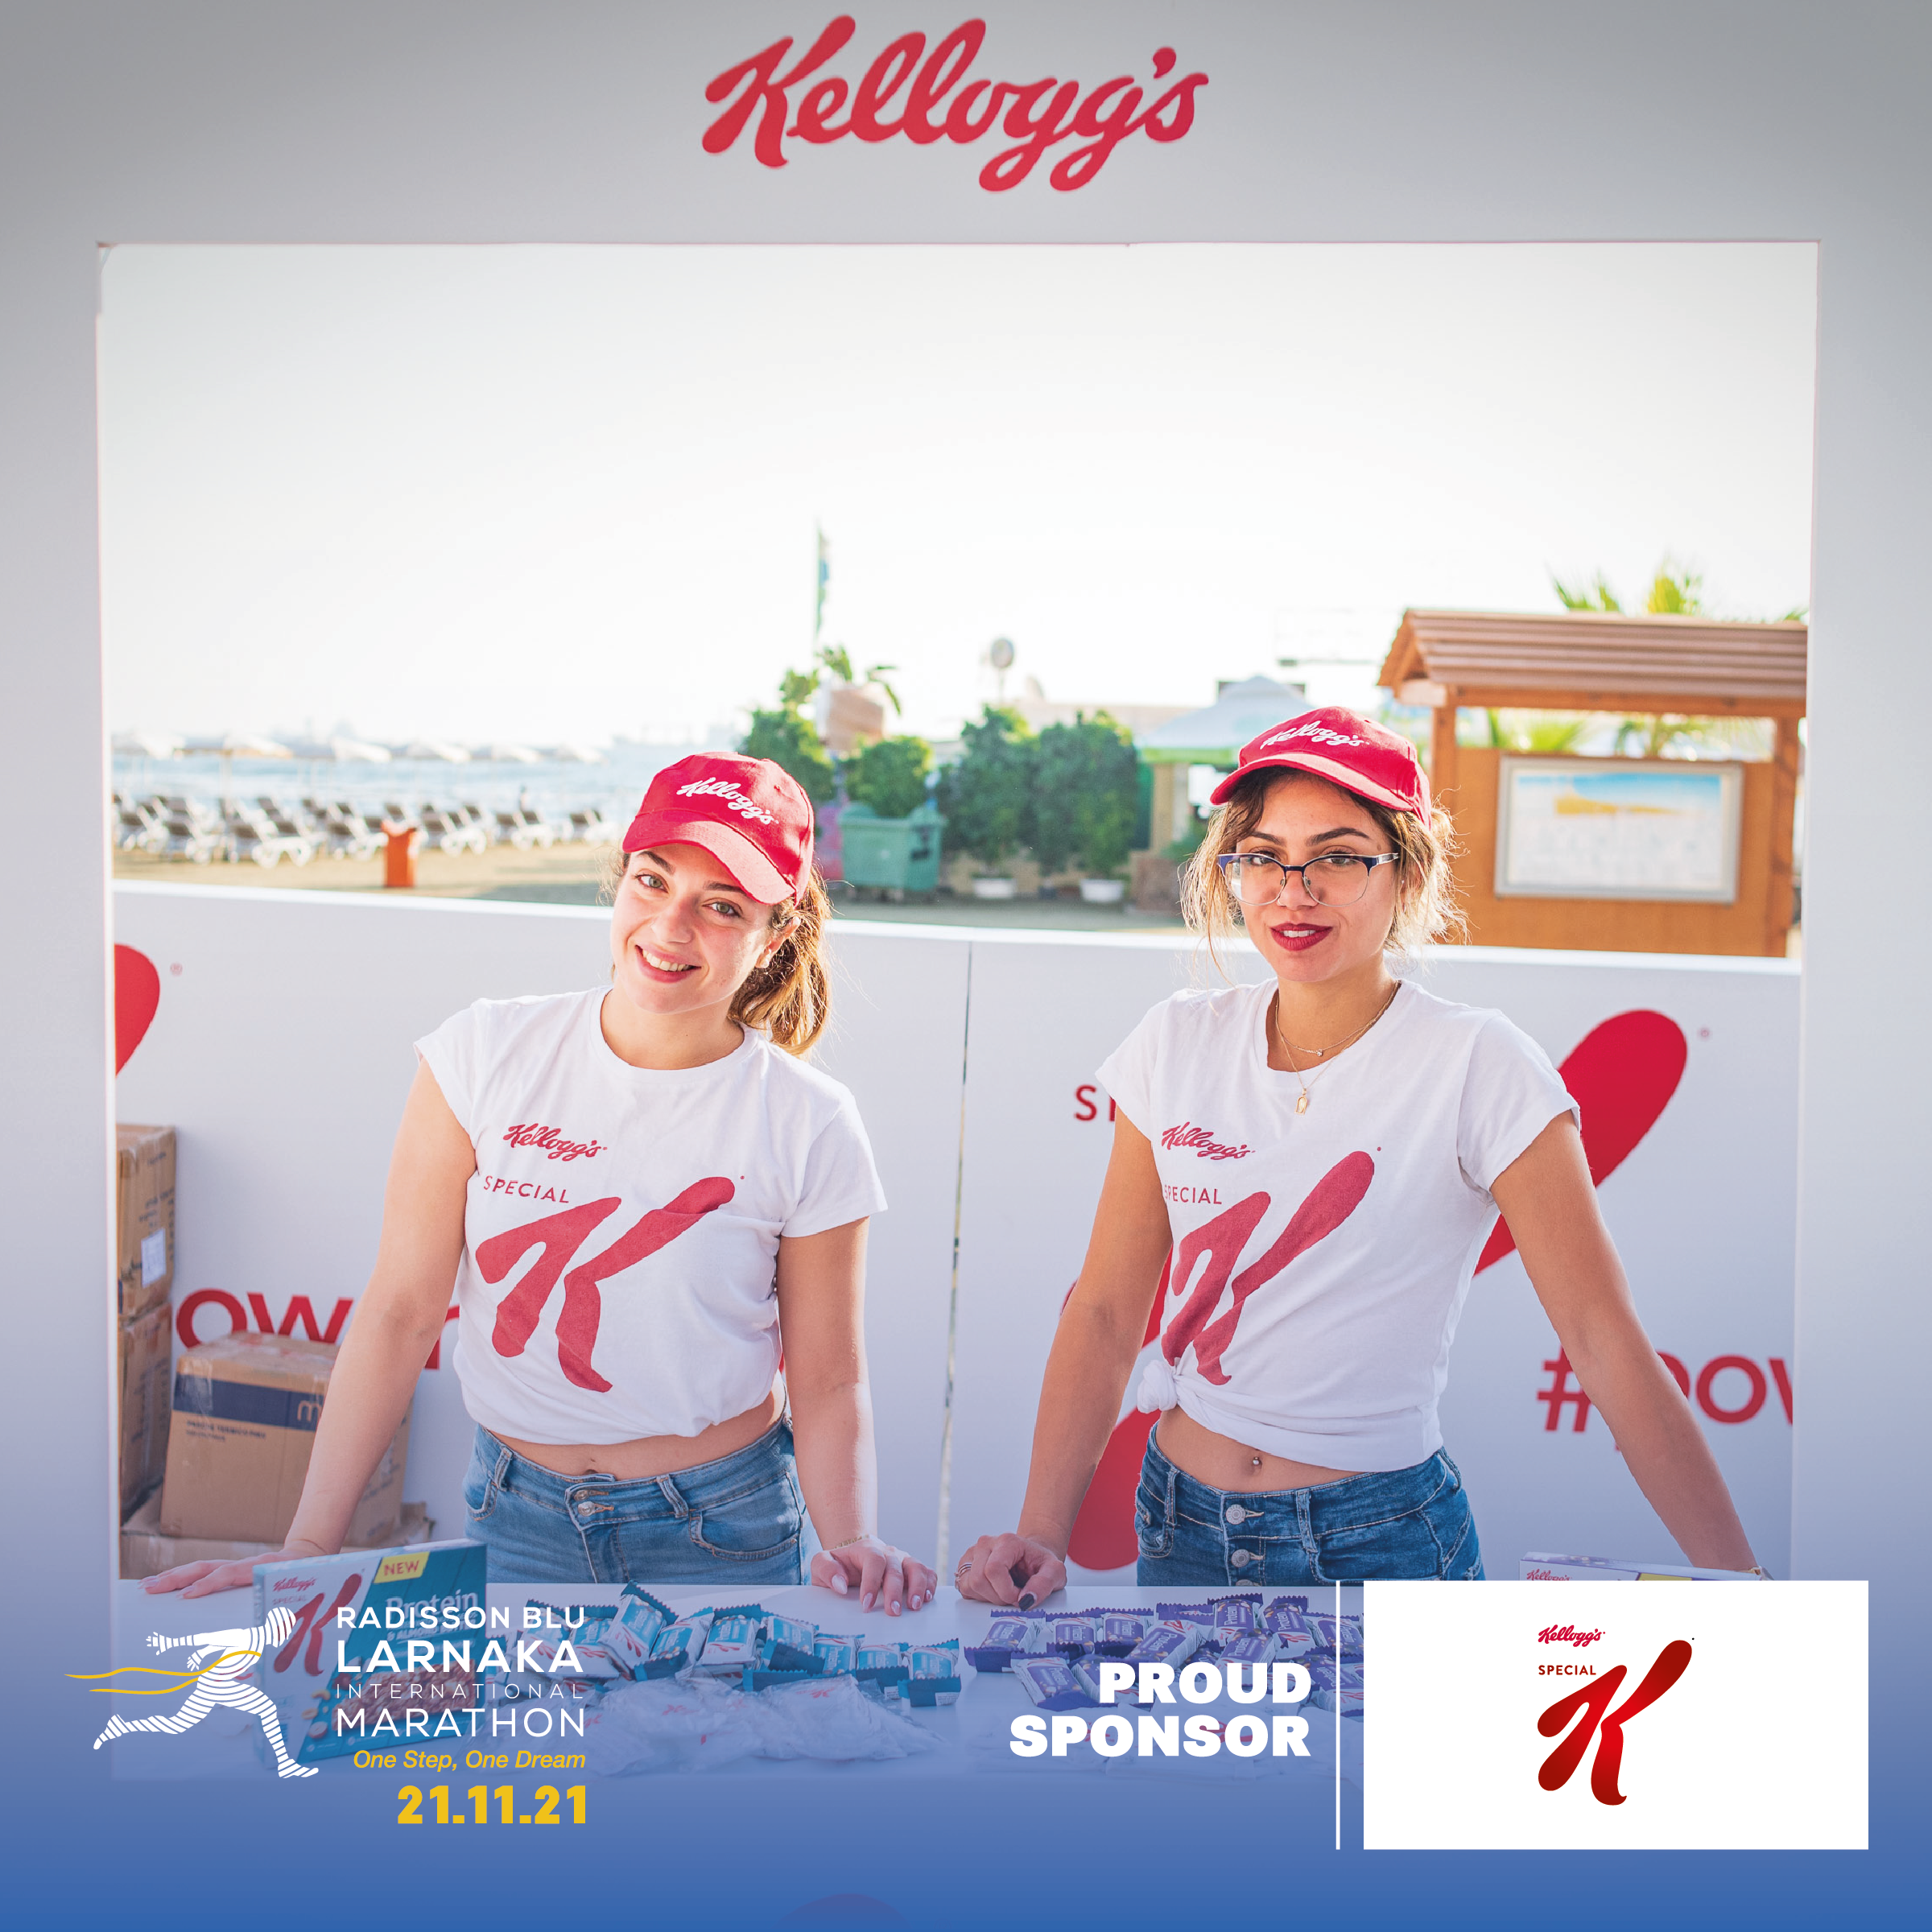 Τα Kellogg’s Special K για δεύτερη χρονιά στο πλευρό του Radisson Blu Διεθνούς Μαραθωνίου Λάρνακας